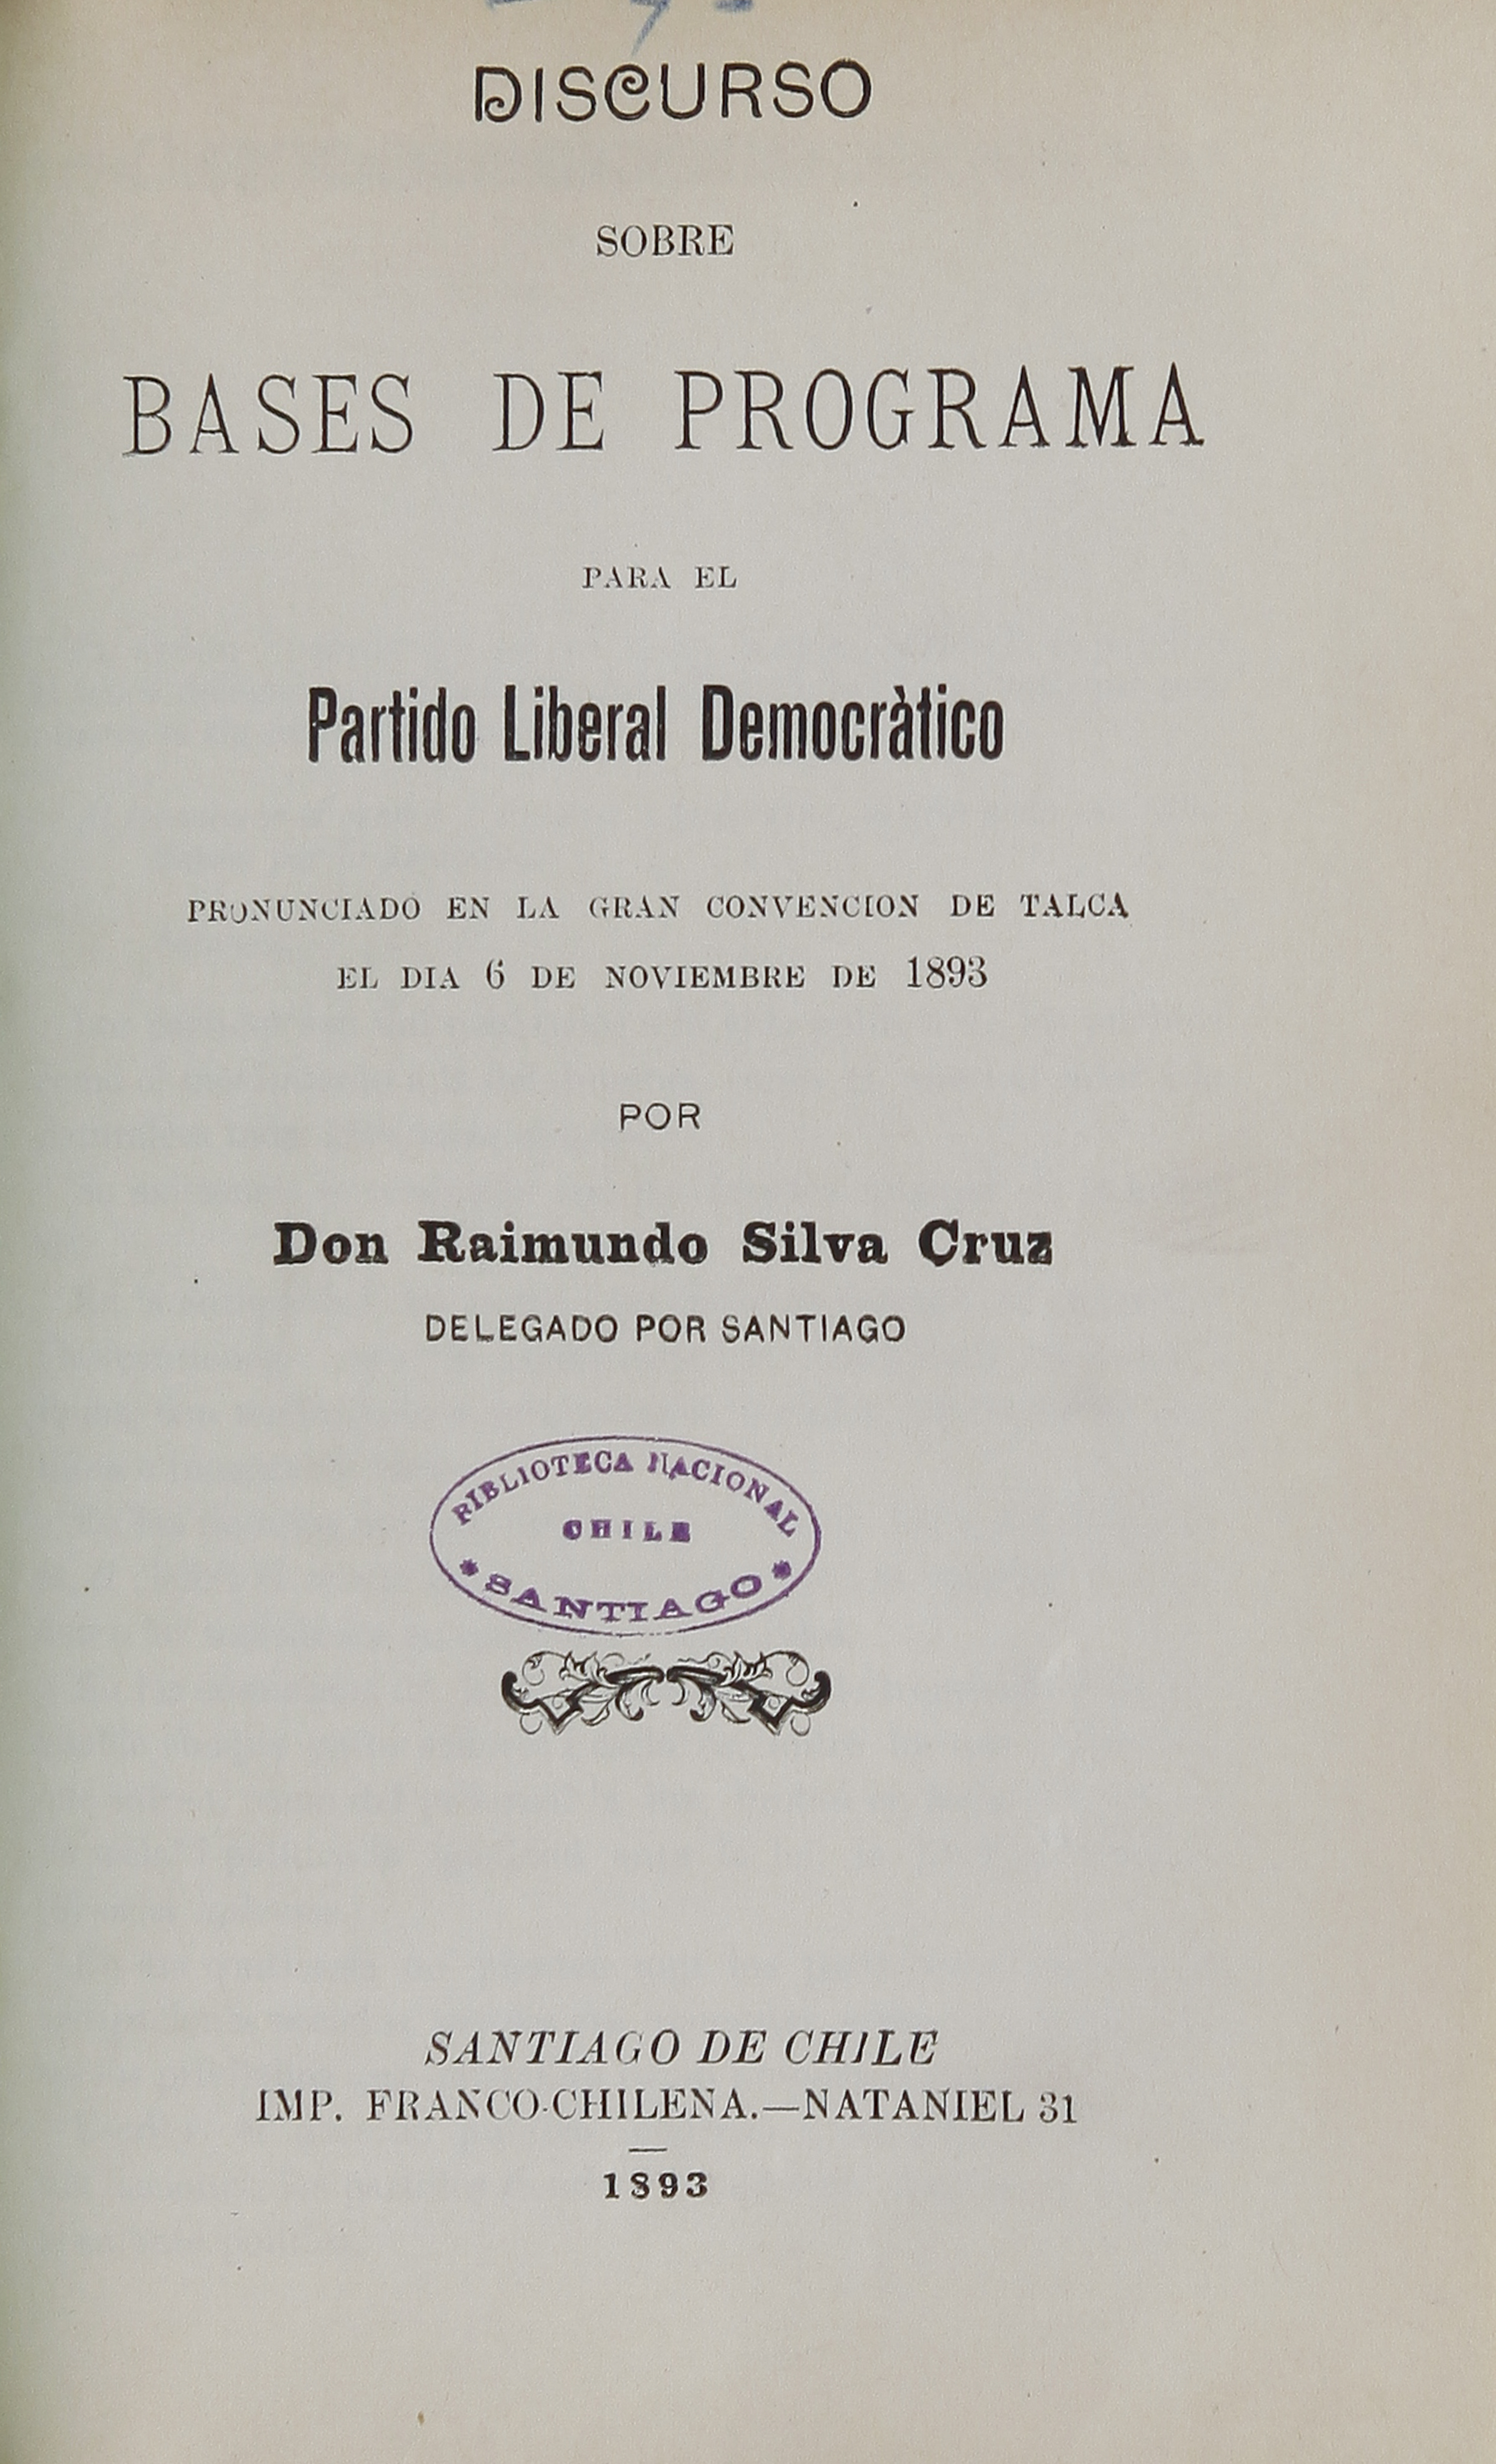 Silva Cruz, Raimundo, 1853-1905. Discurso sobre bases de programa para el PartdioLiberal Democrático pronunciado en la Convención de Talca/ Raimundo Silva Cruz. Santiago: [s.n.], 1893